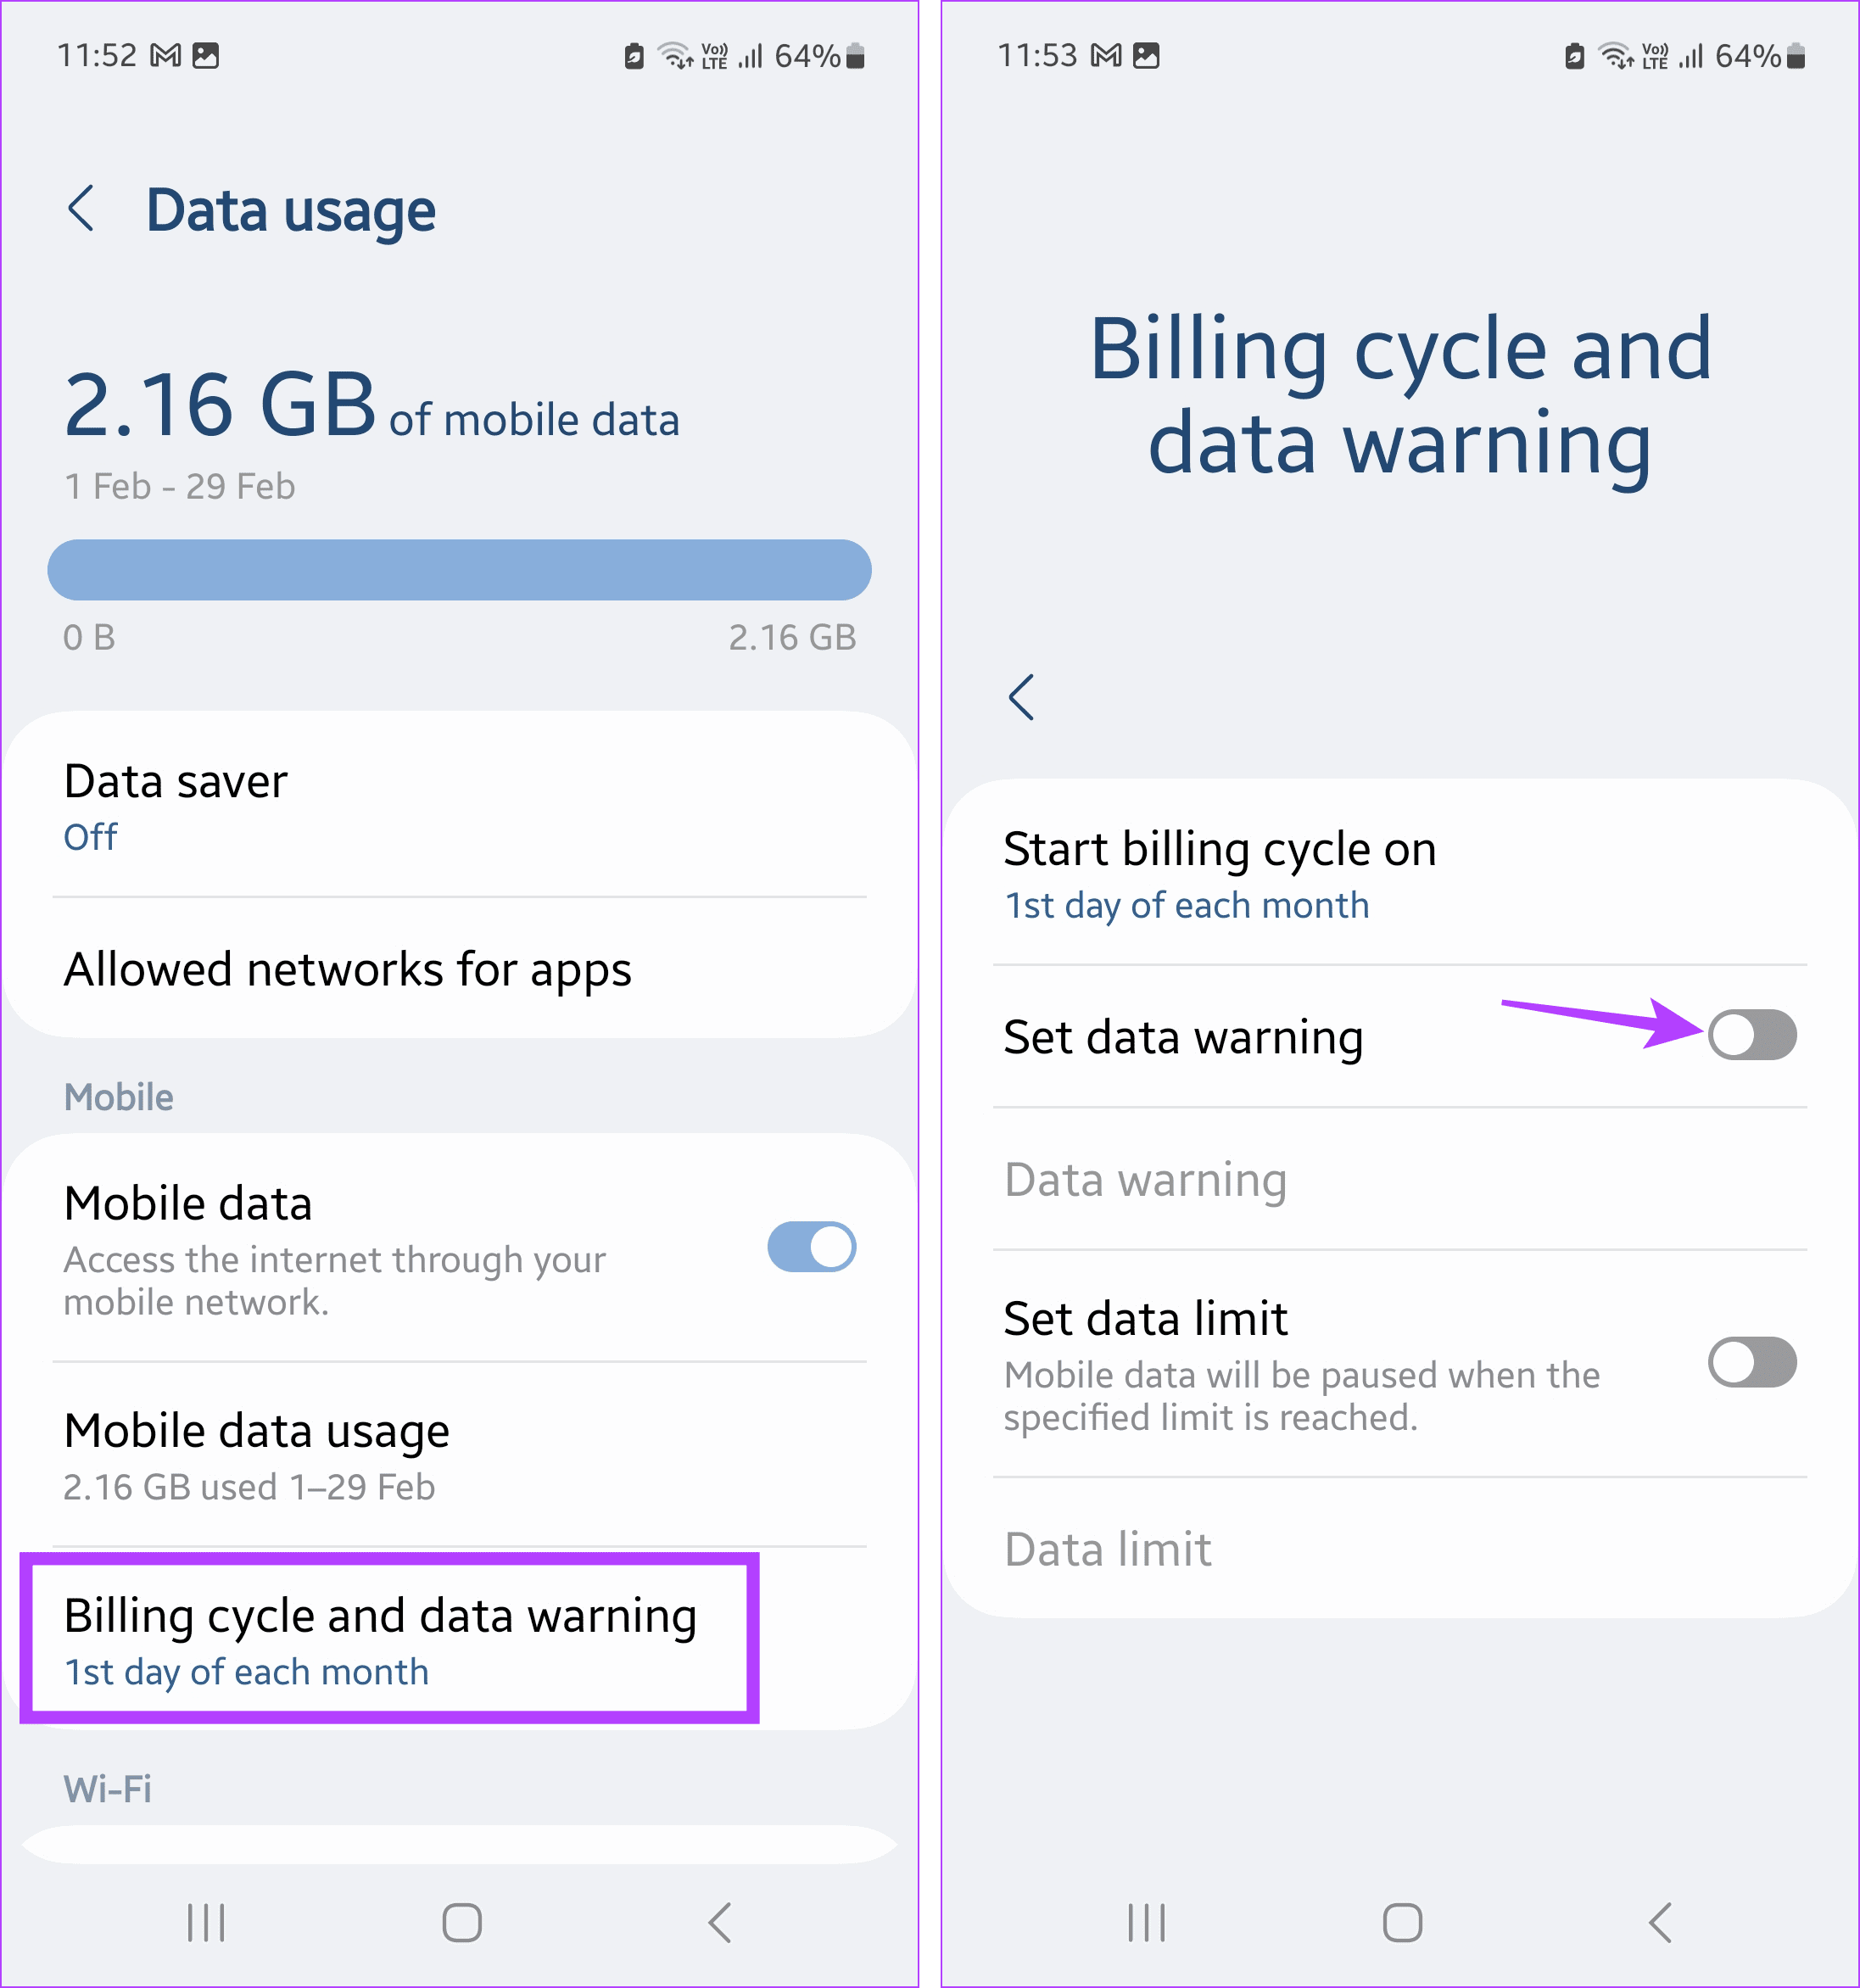 Tap on data warning